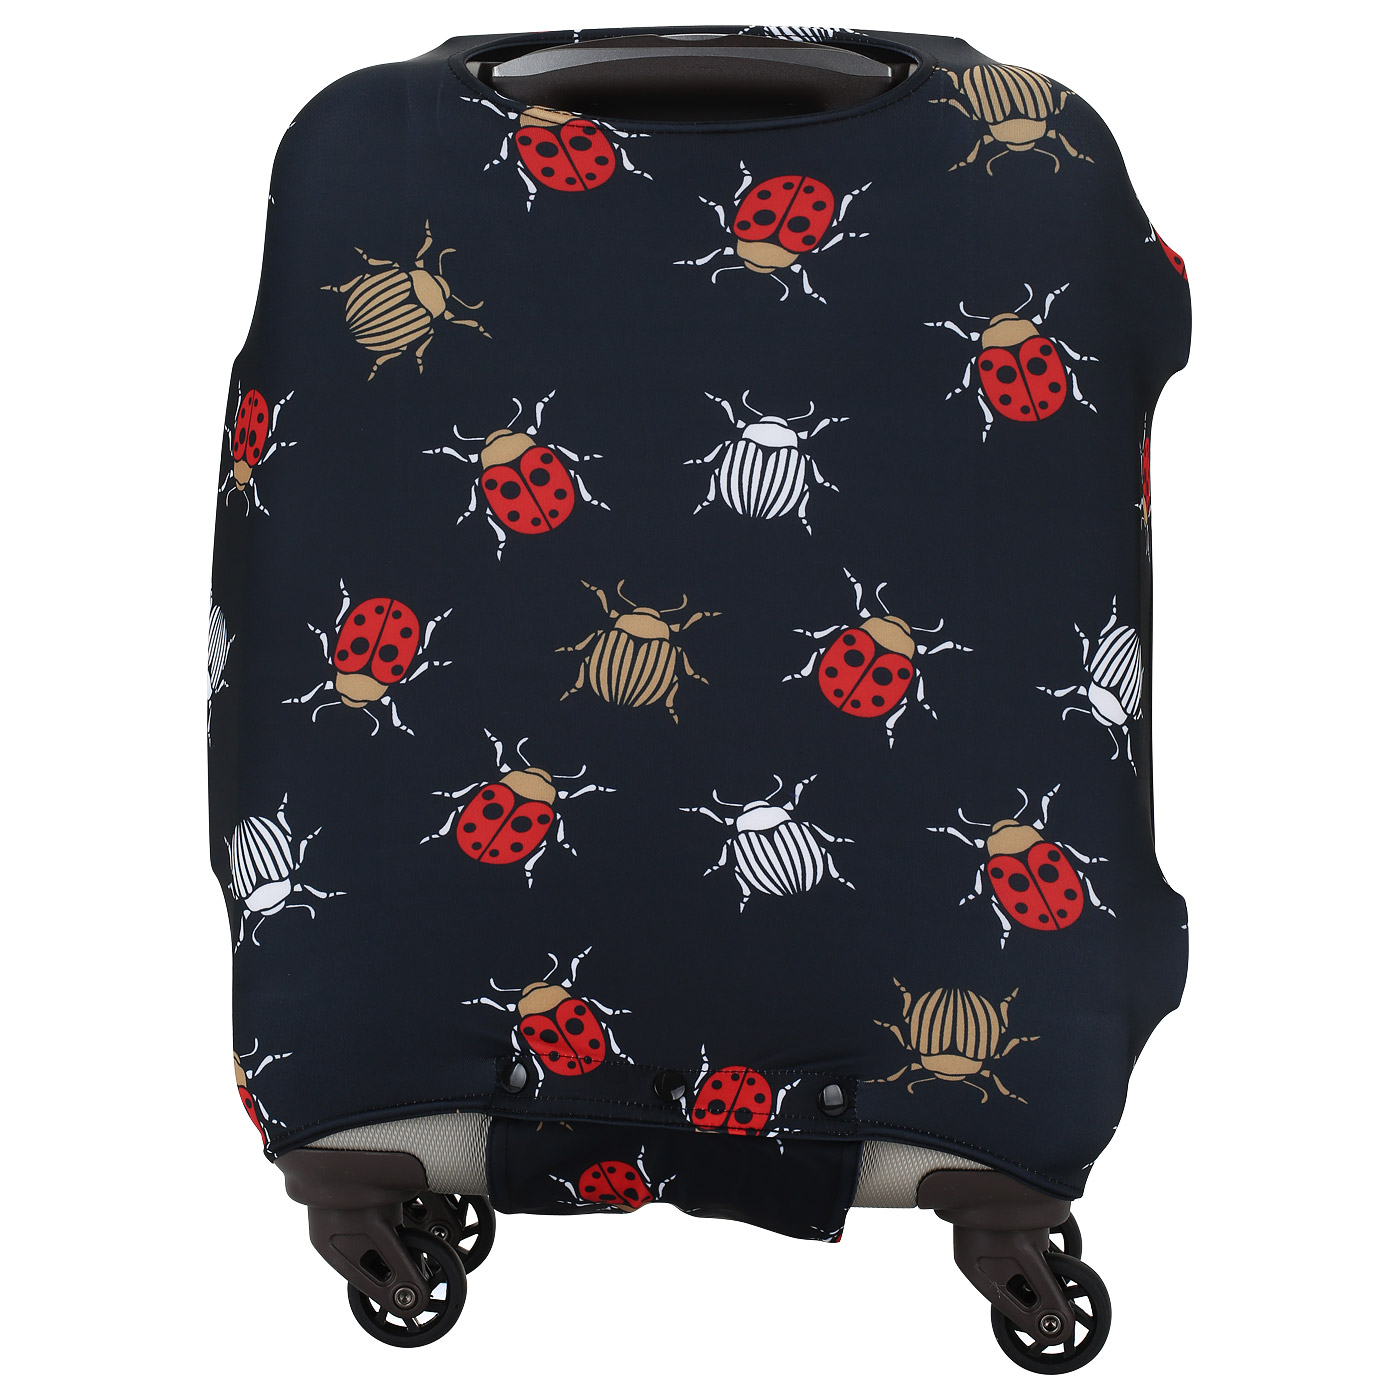 Легкий чехол на чемодан Eberhart Ladybugz